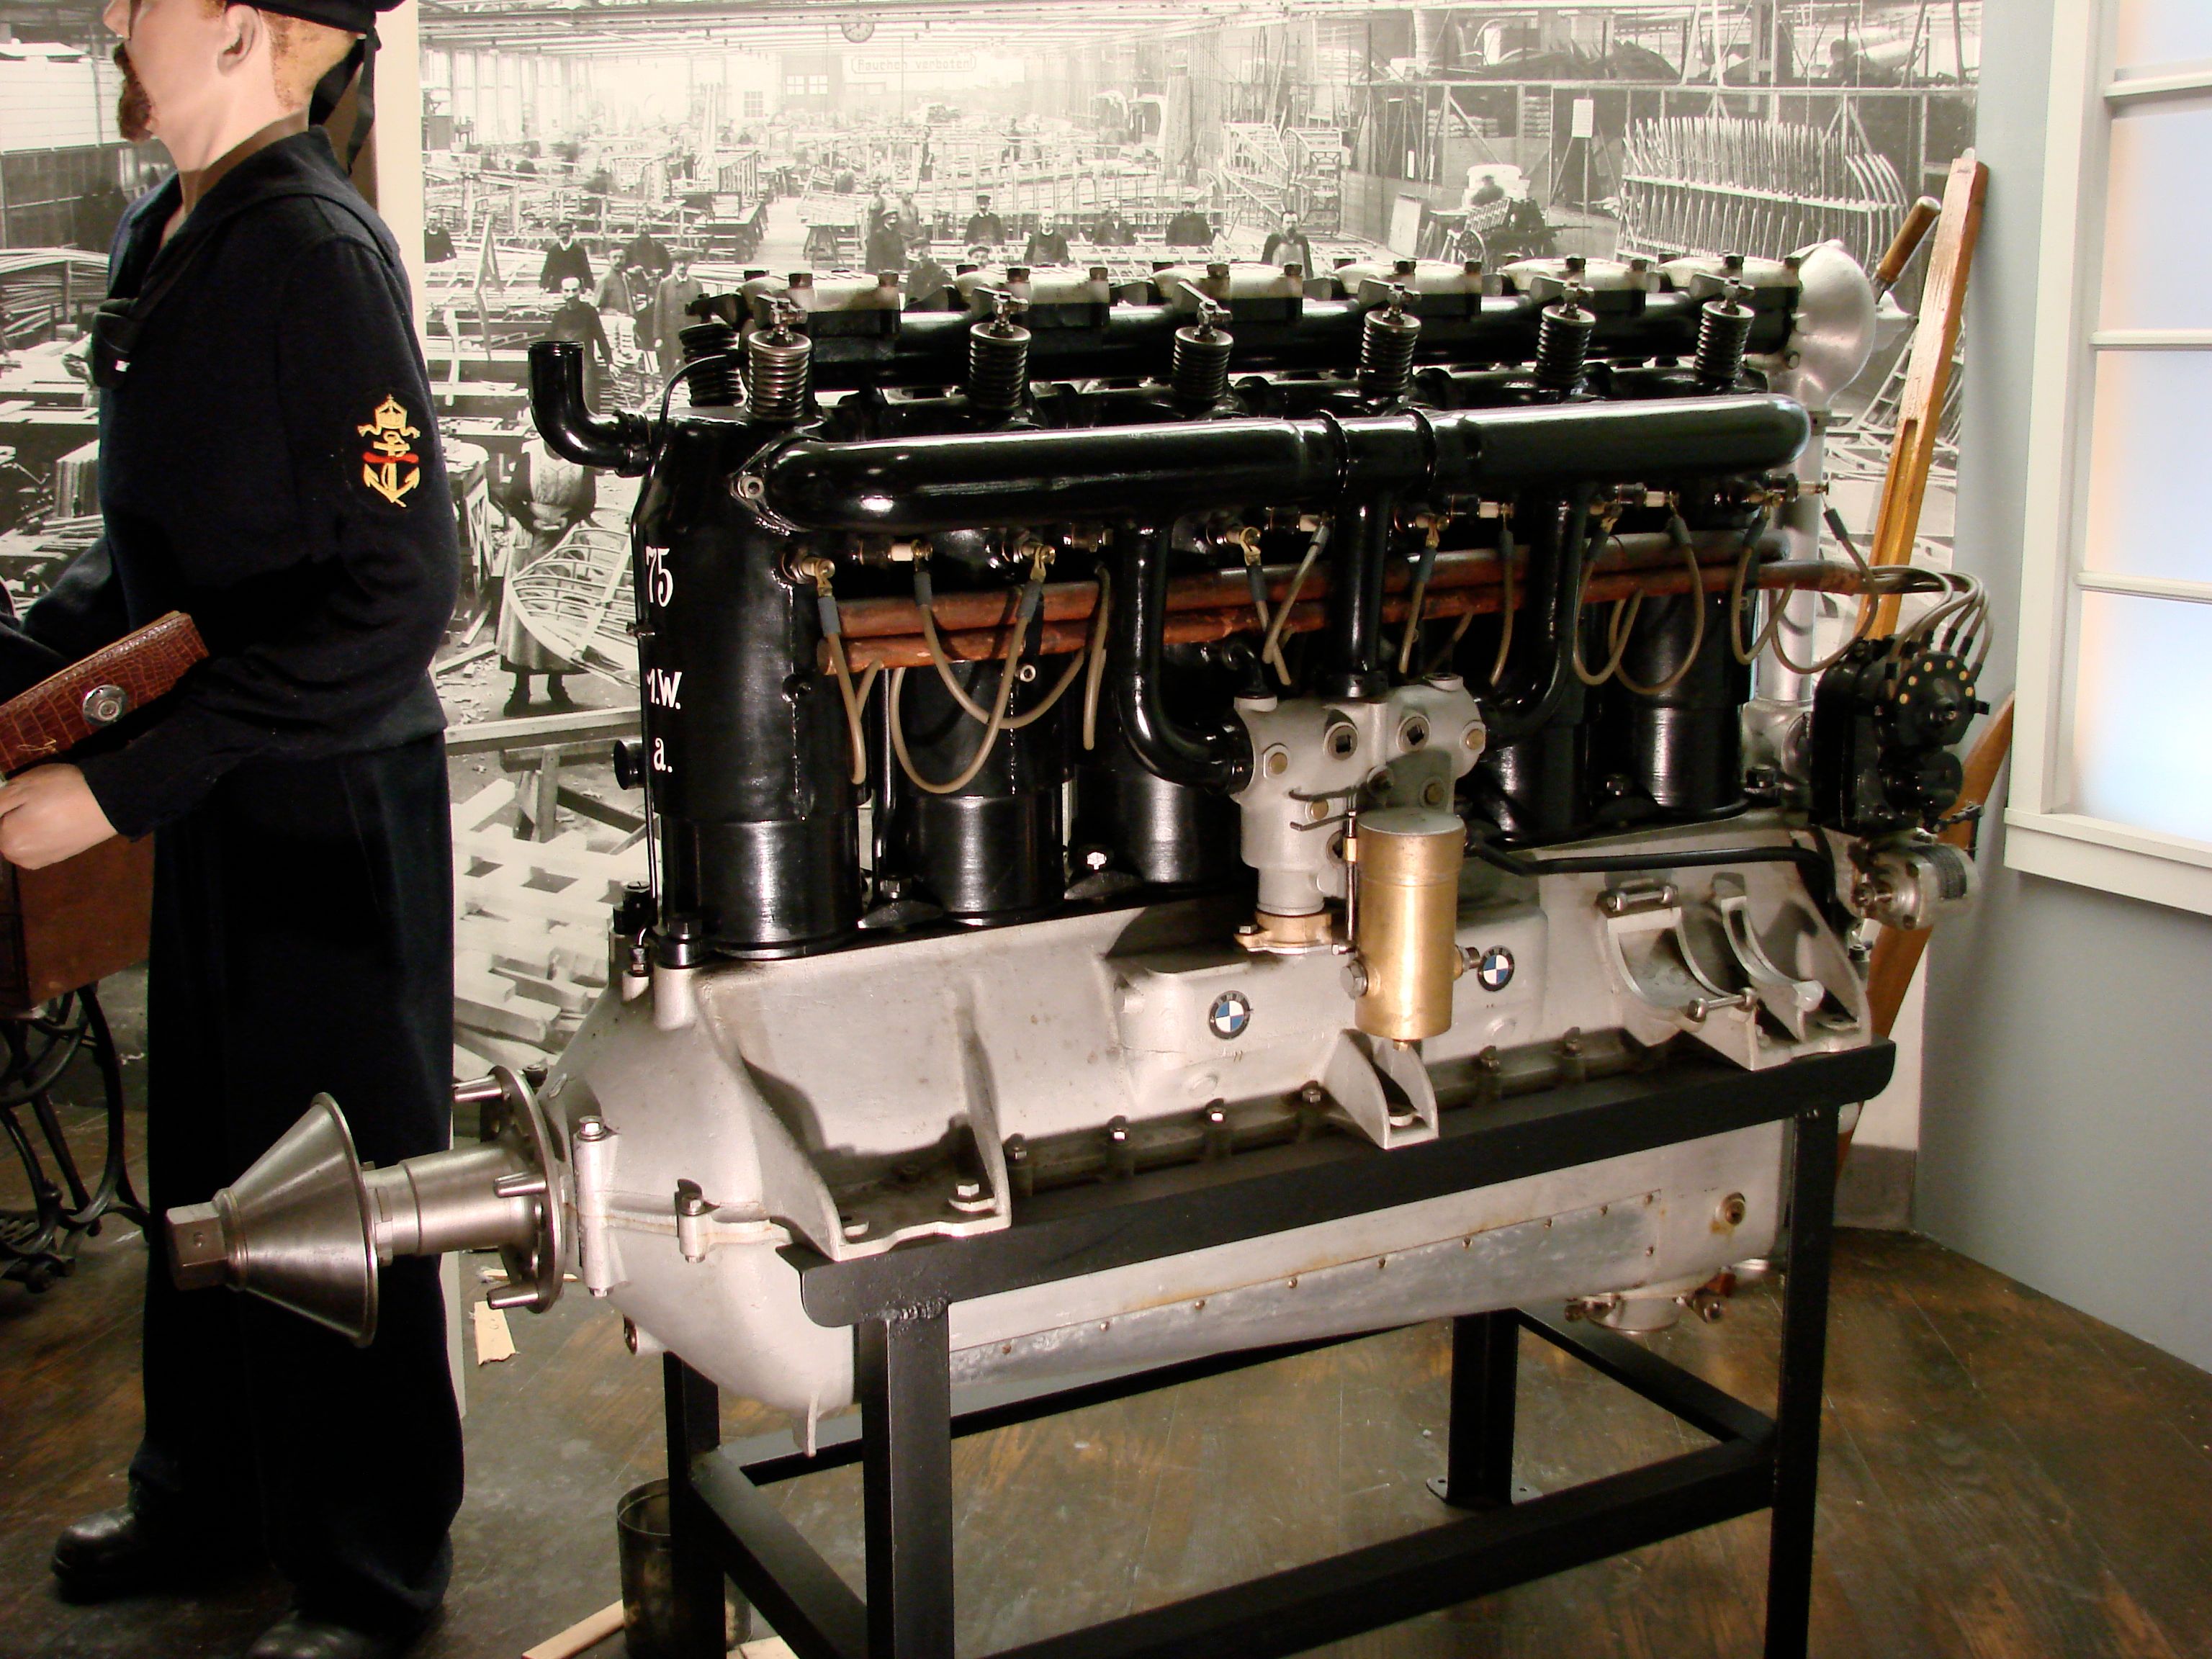 A BMW IIIa engine on display.